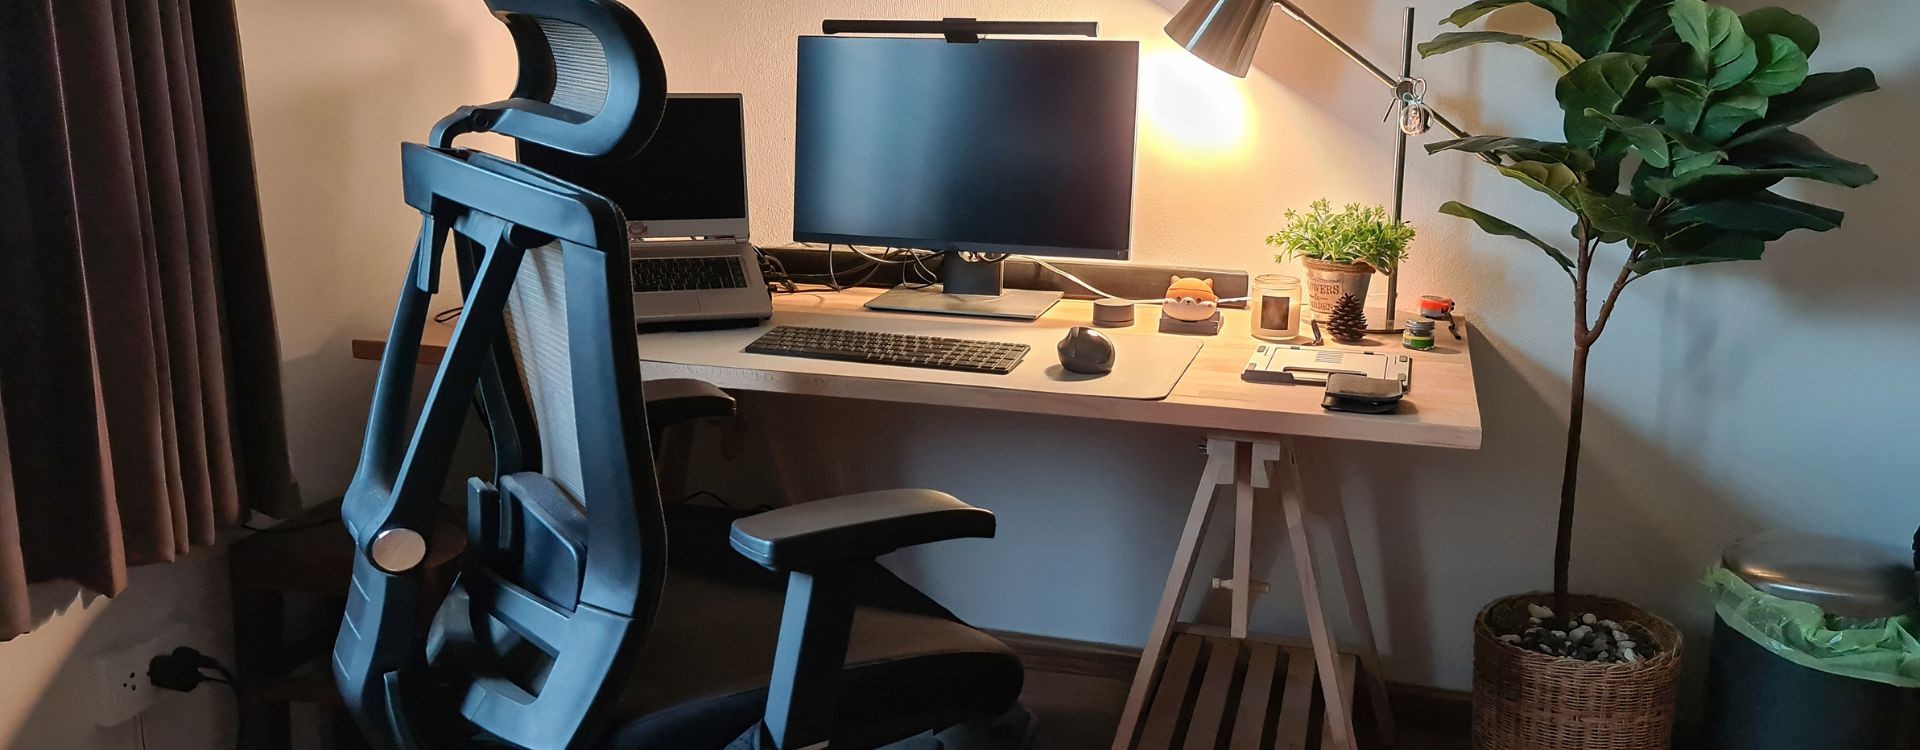 6 pasos para seleccionar una silla ergonomica de oficina El blog de Sillas-Muebles  – Sillas de diseño y ergonómicas